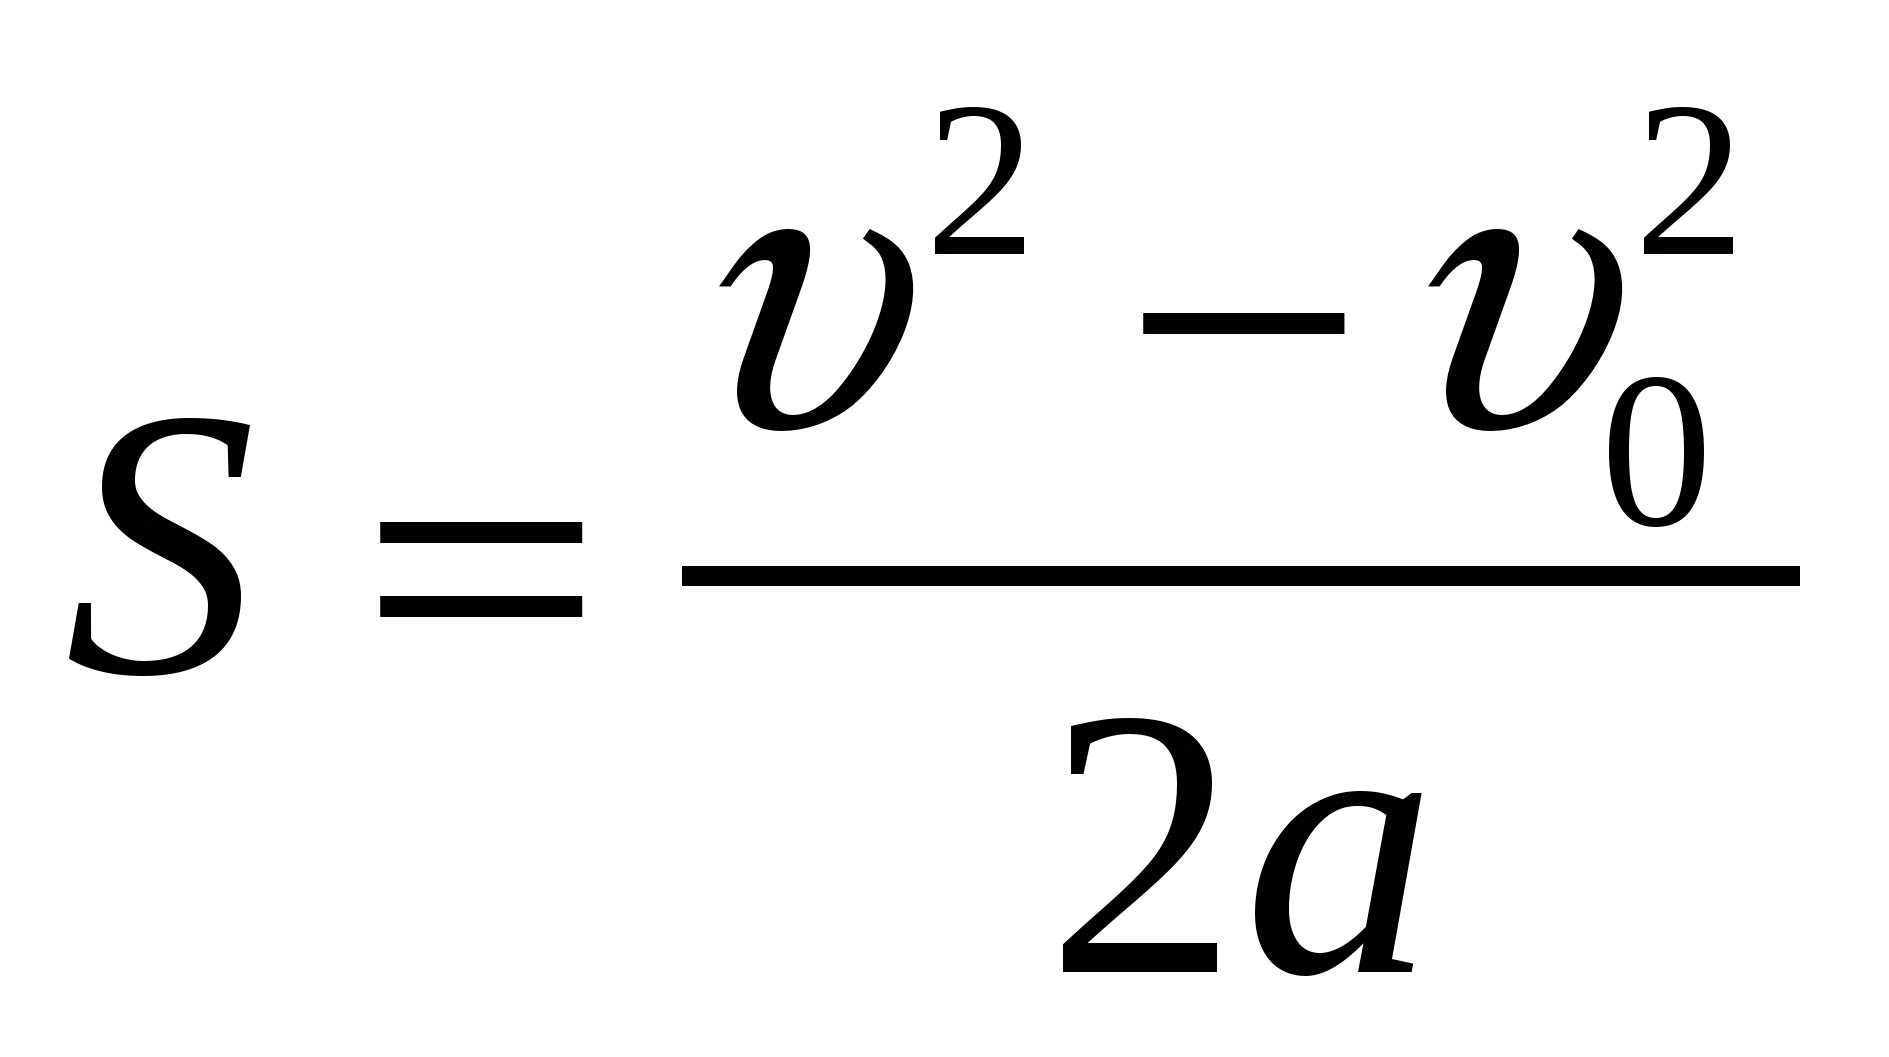 S v2 v02/2a. S = (v0**2 + v**2)/2g. S V 2-v0 2/2a. V2-v2/2a.